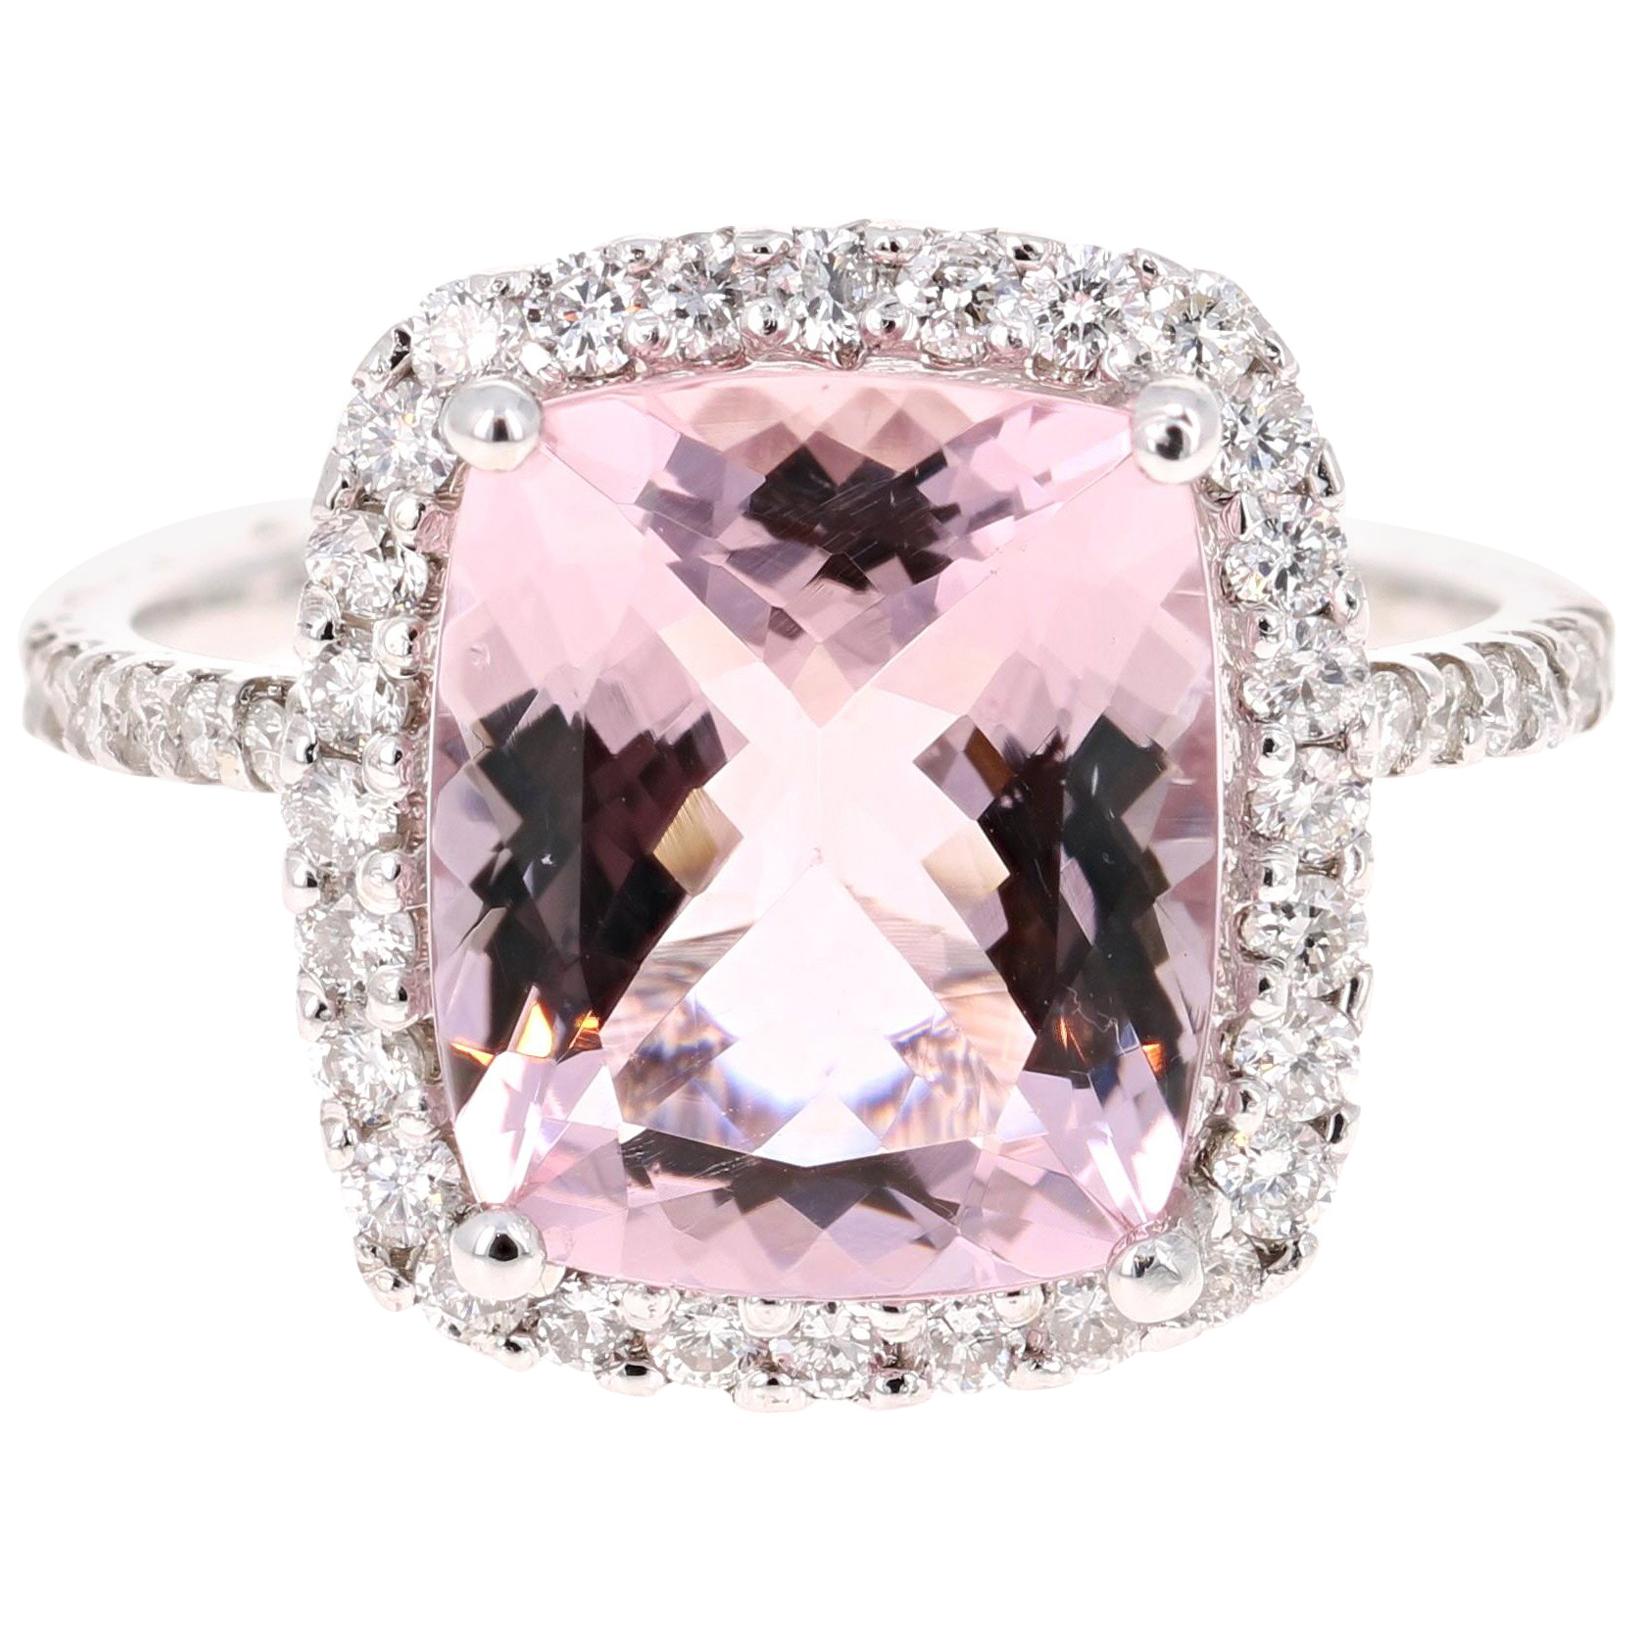 4.83 Carat Cushion Cut Pink Morganite Diamond White Gold Engagement Ring